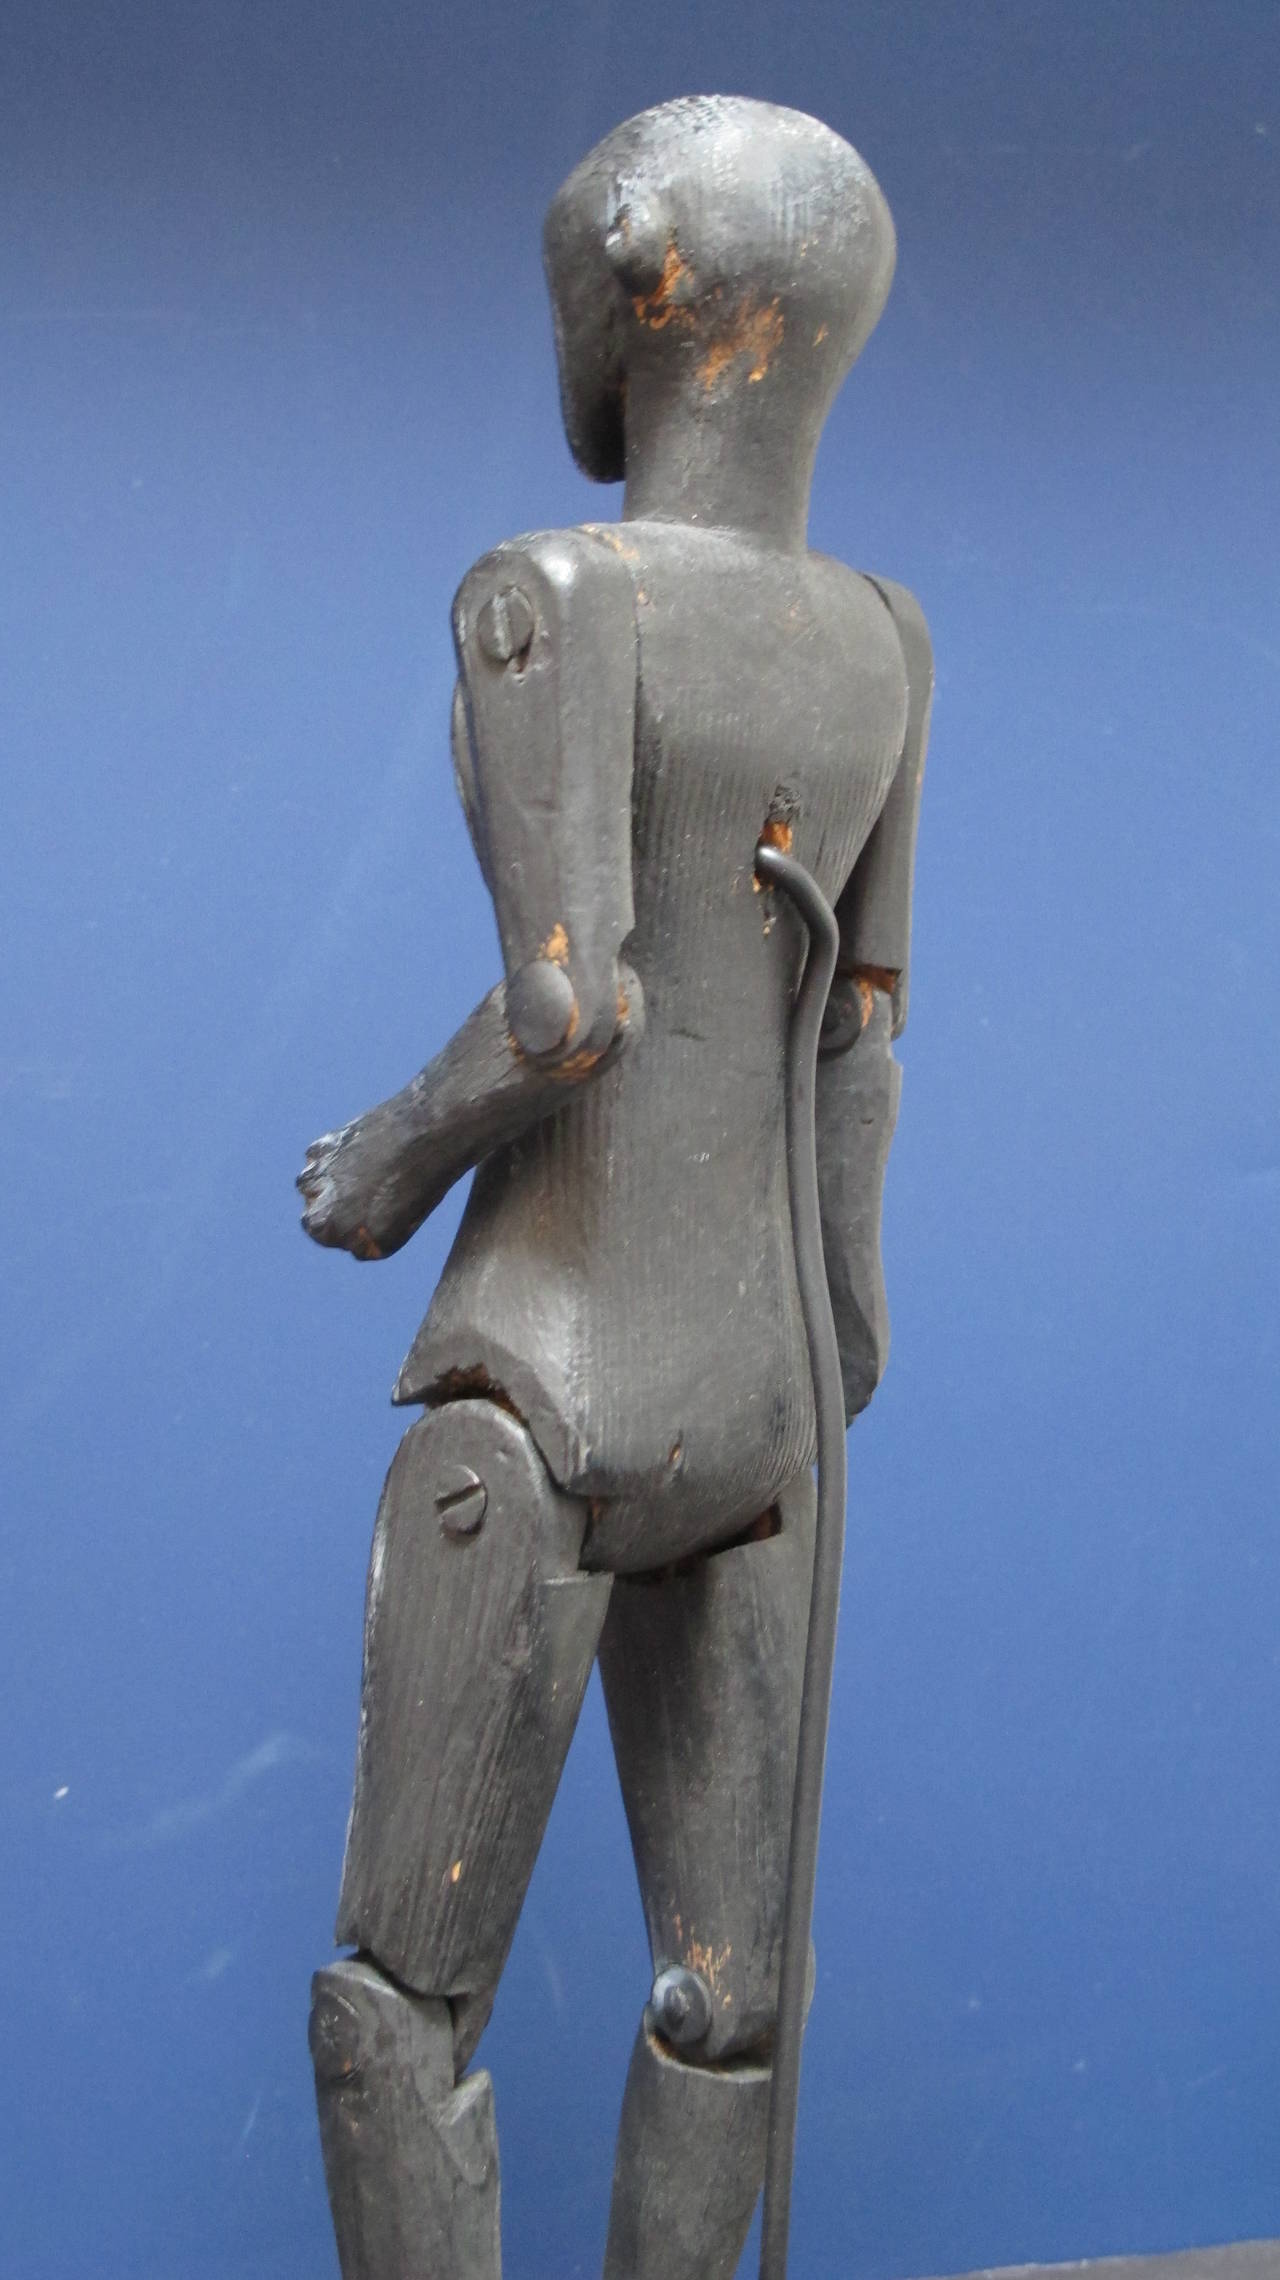 Paint Black Folk Art Figure with Articulated Limbs